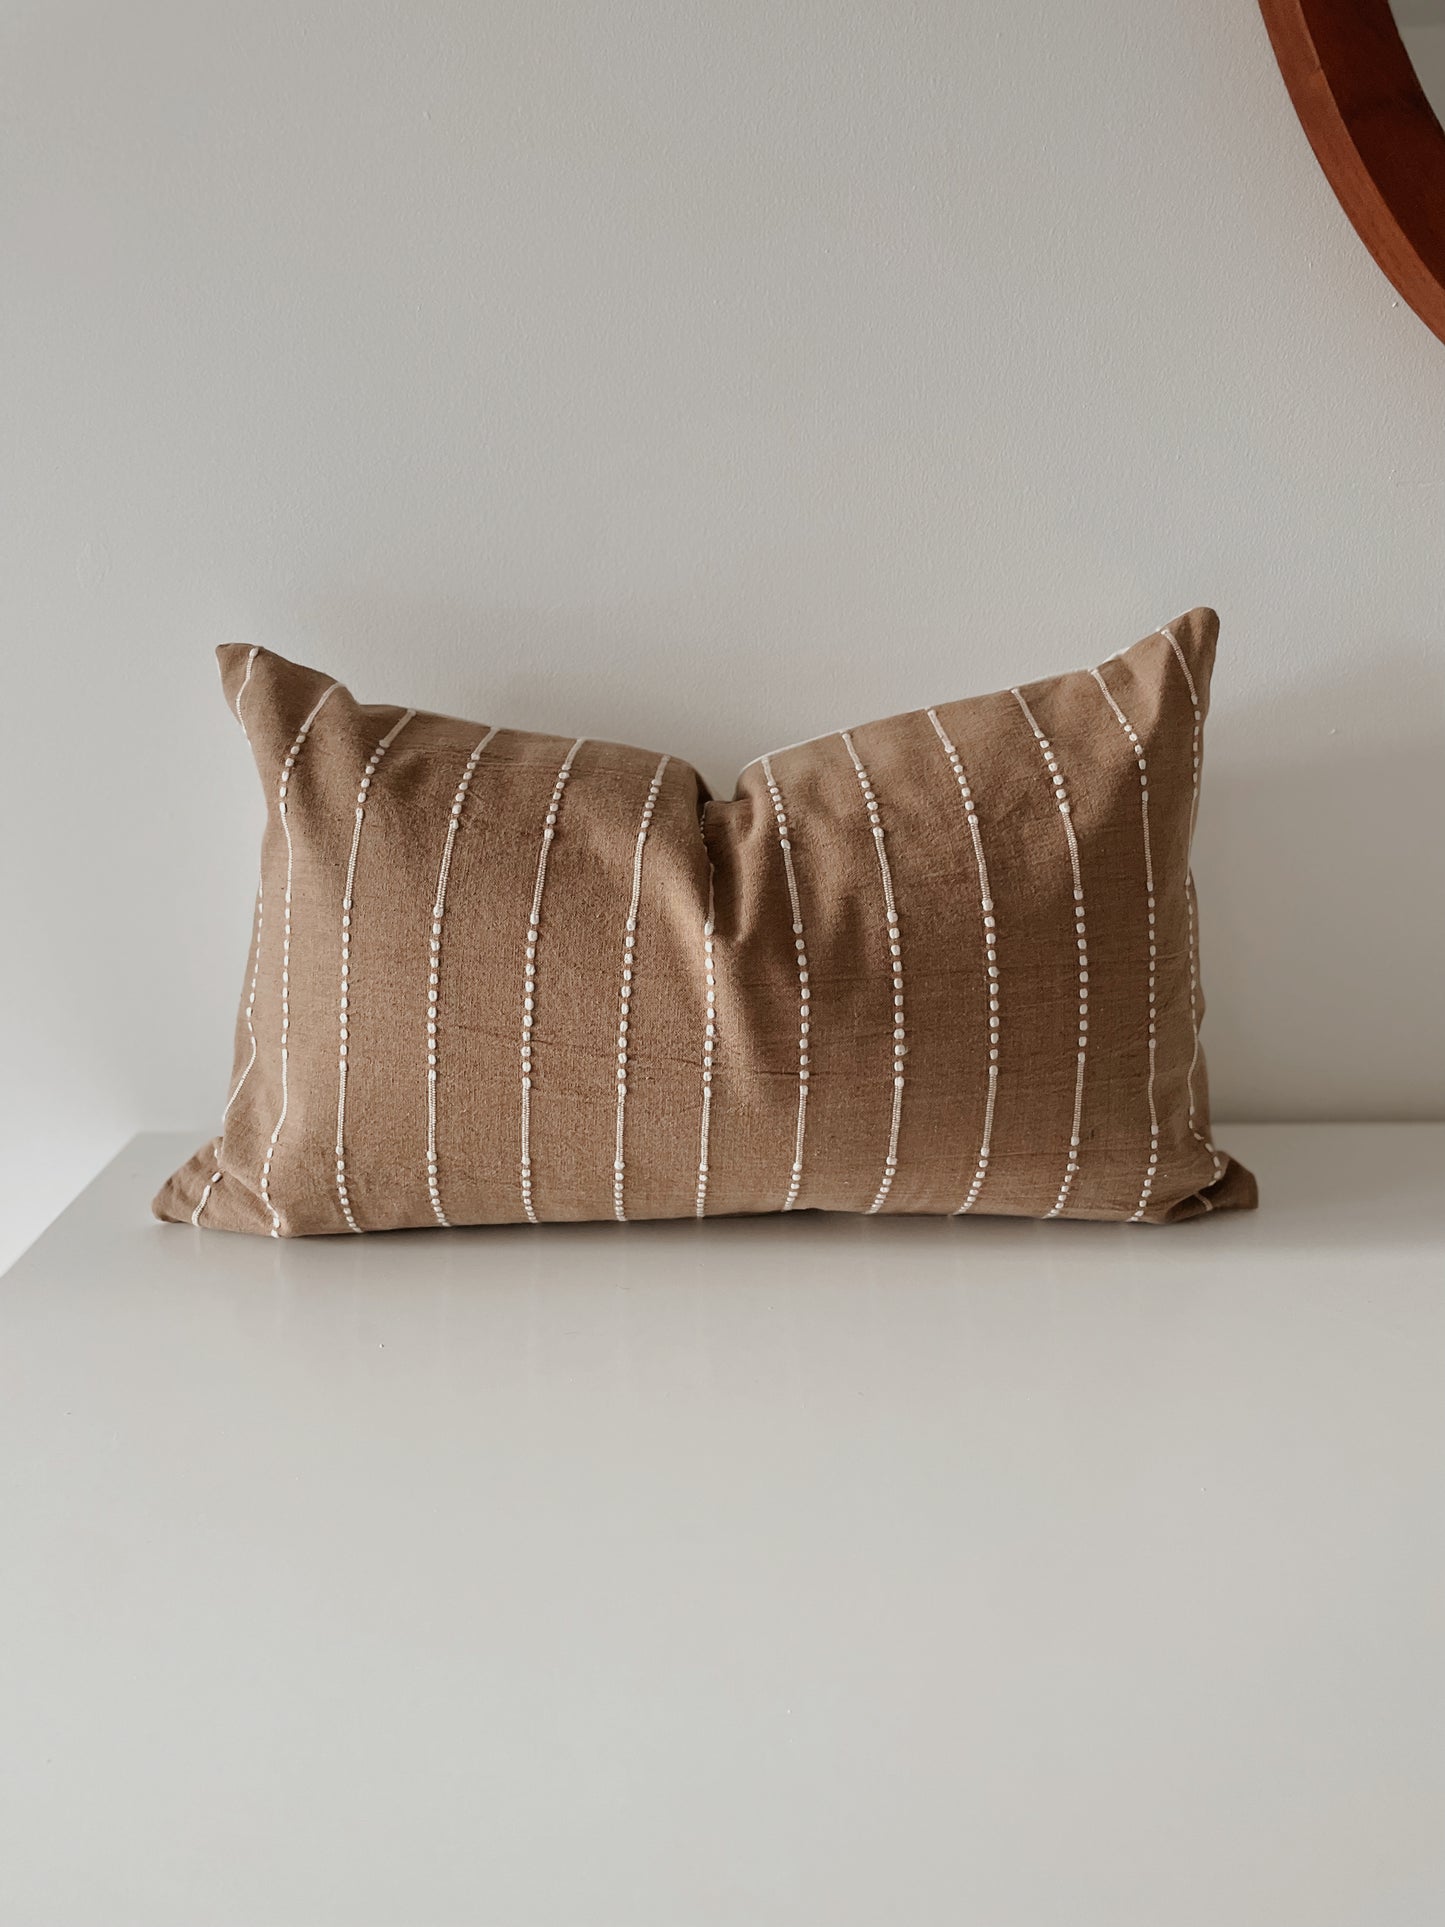 Cocoa Woven Pillow Cover